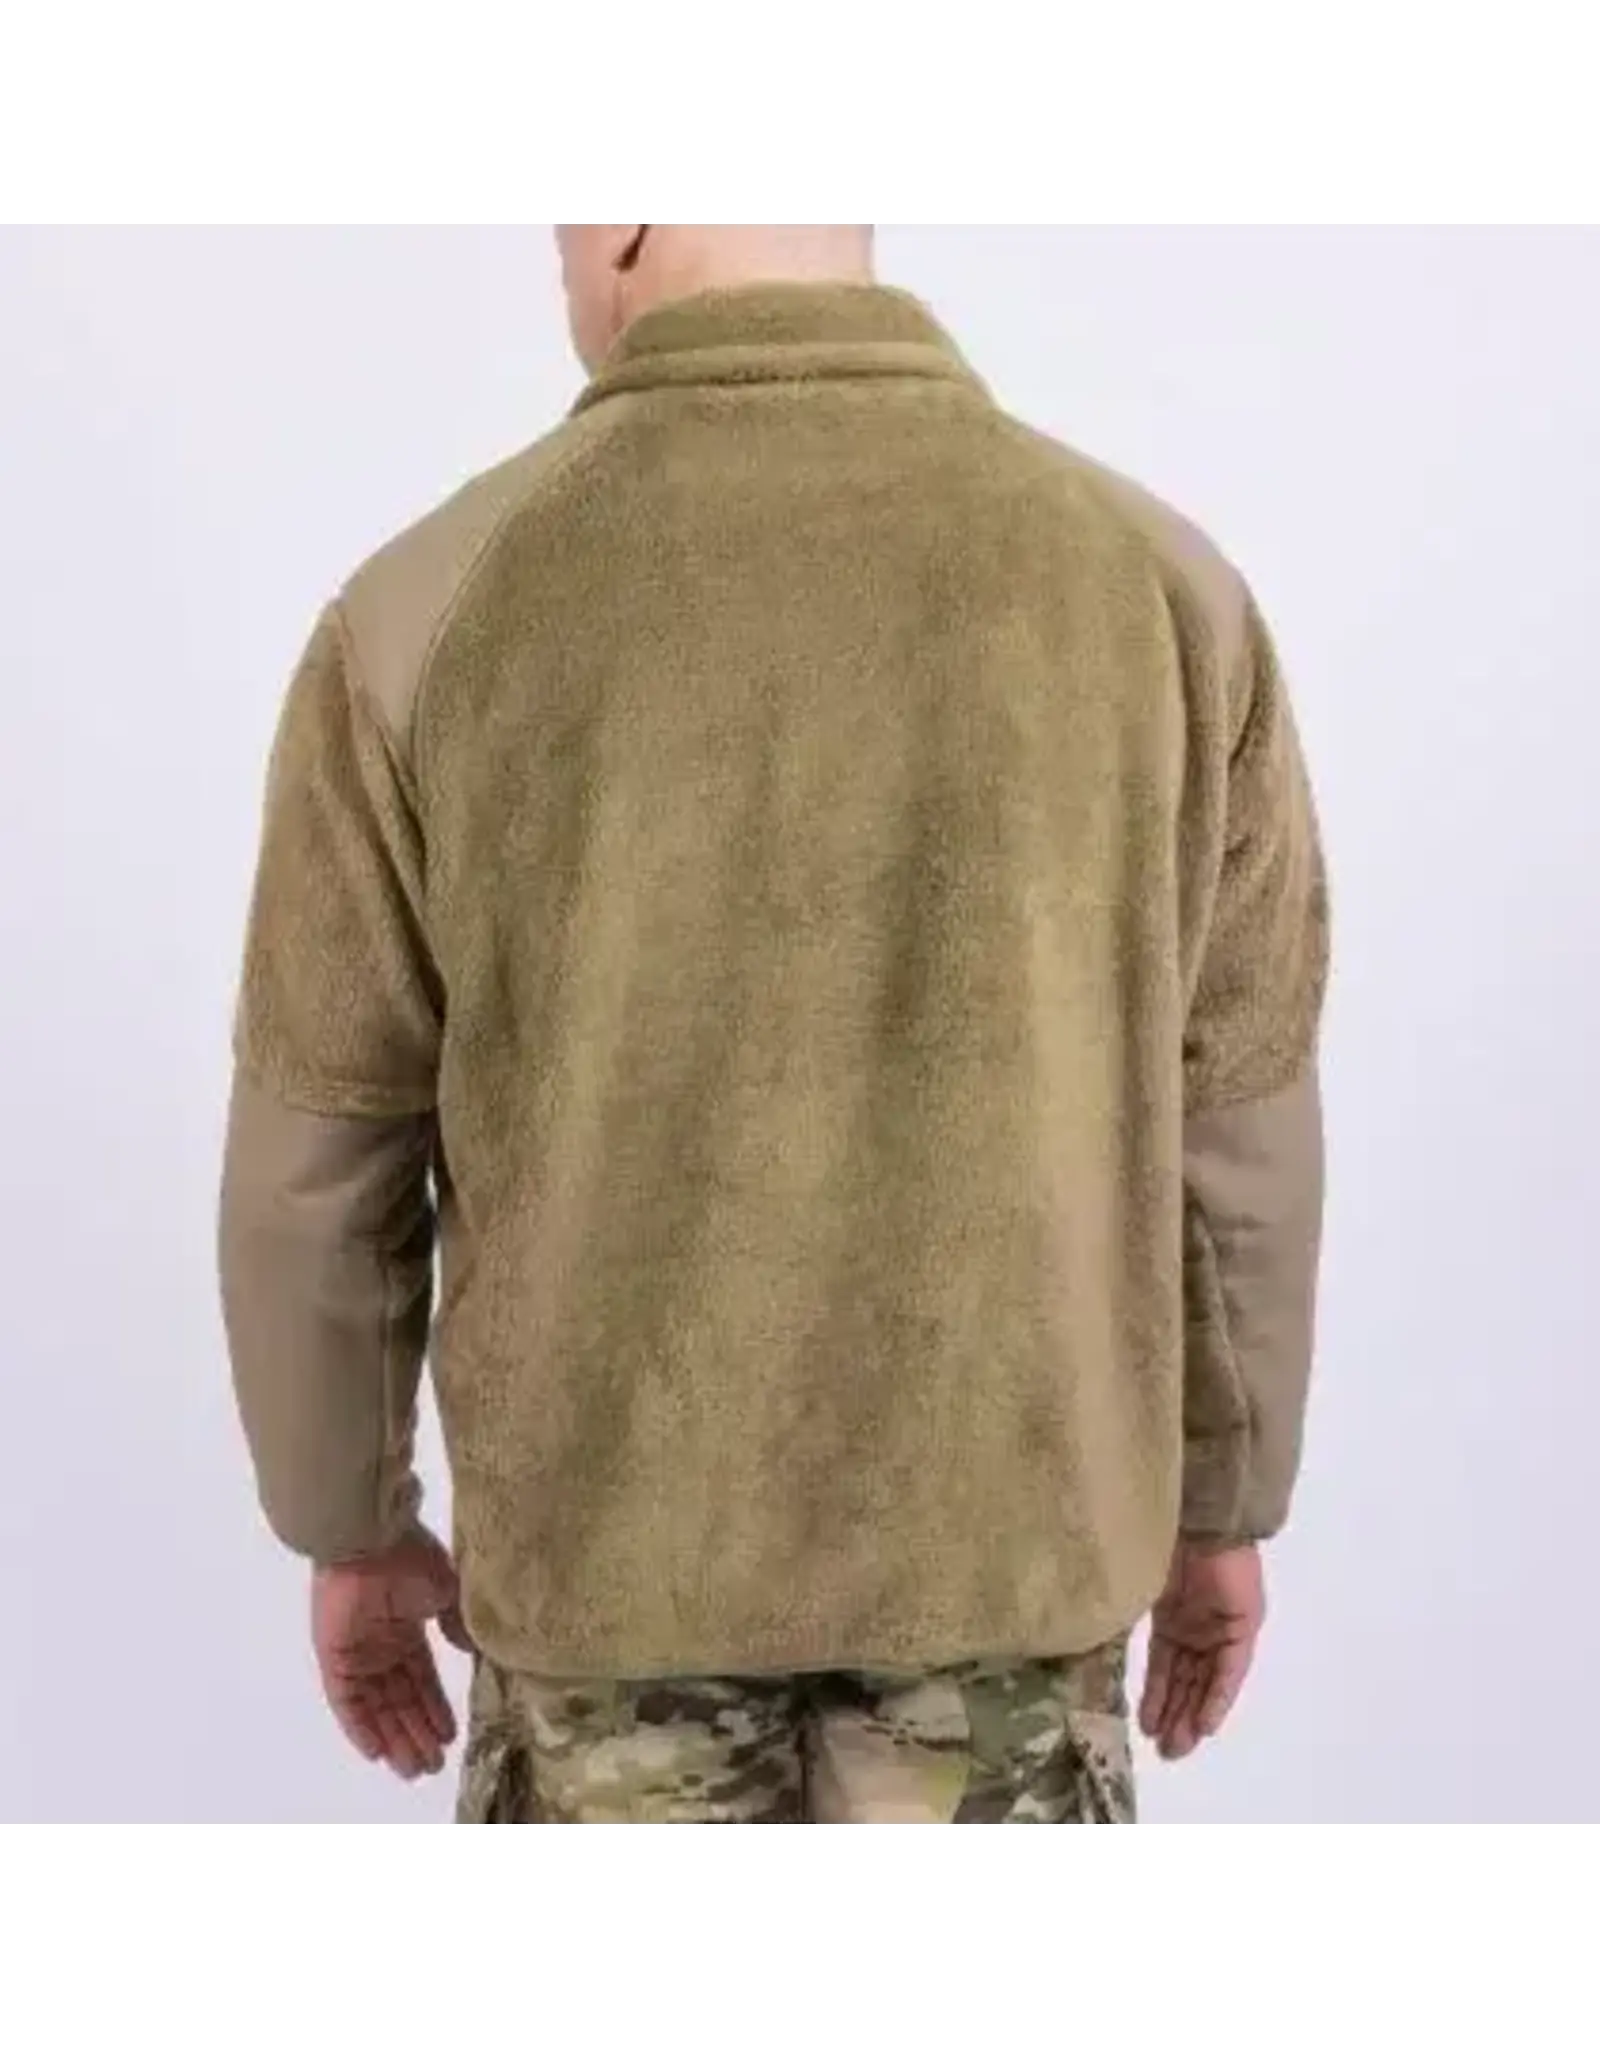 GEN III L3 Fleece Shirt Coyote Tan